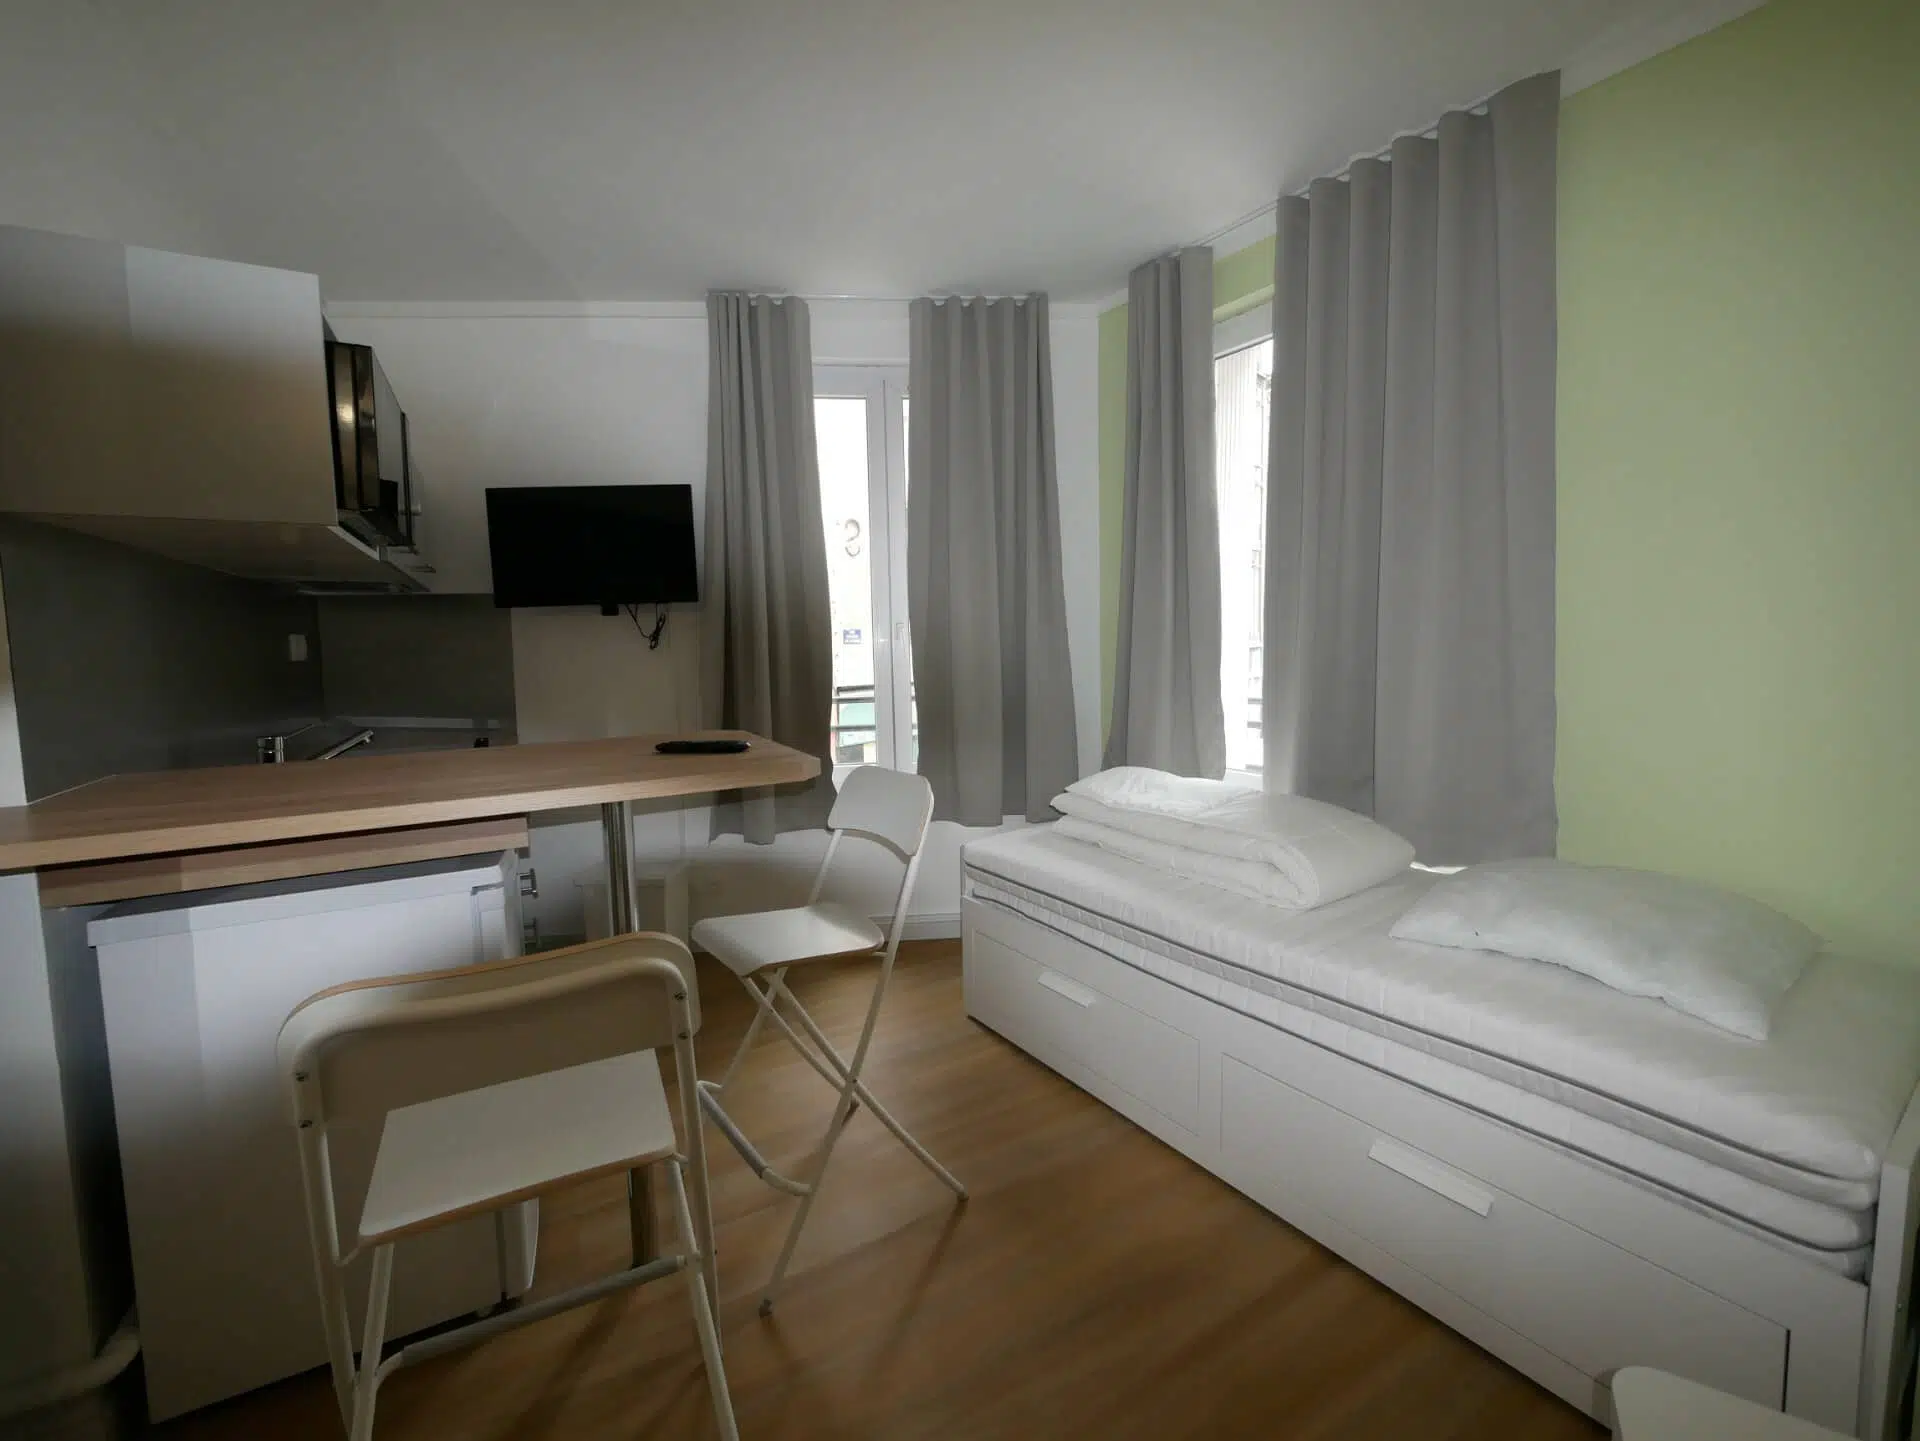 Appartement en location de type F1 Le Havre m04